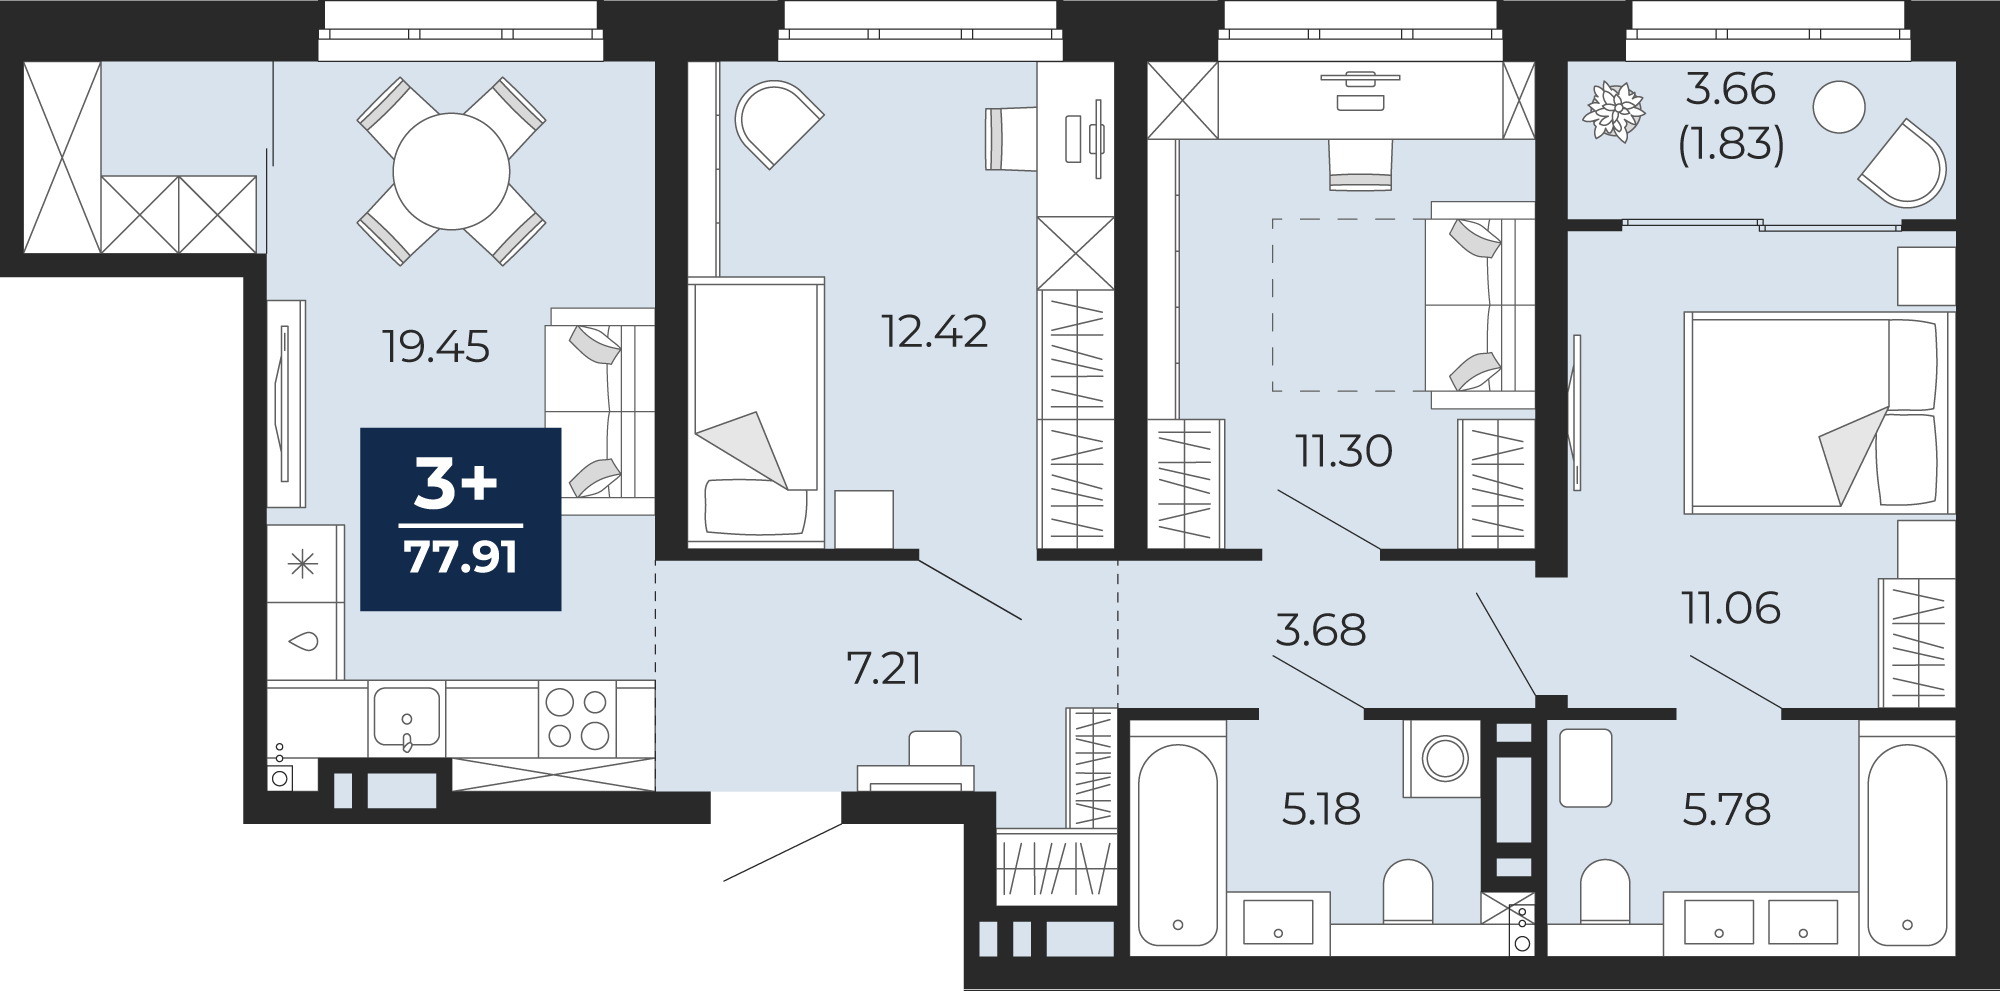 Квартира № 158, 3-комнатная, 77.91 кв. м, 3 этаж